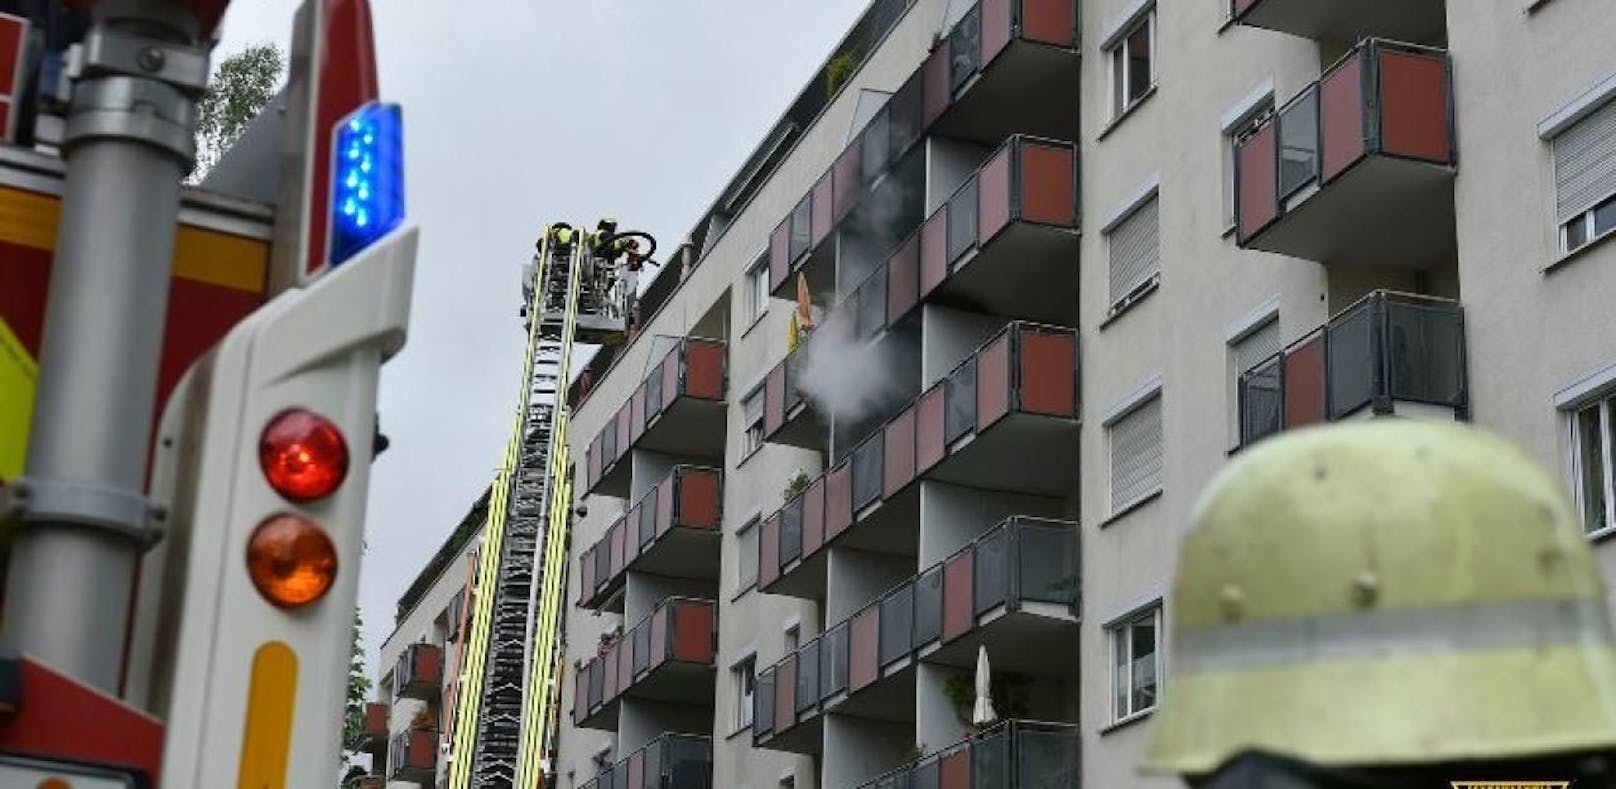 Schlechte Idee: Eine Münchnerin wollte ihr Wespennest loswerden - und zündete den Balkon an. (Bild: Feuerwehr München)